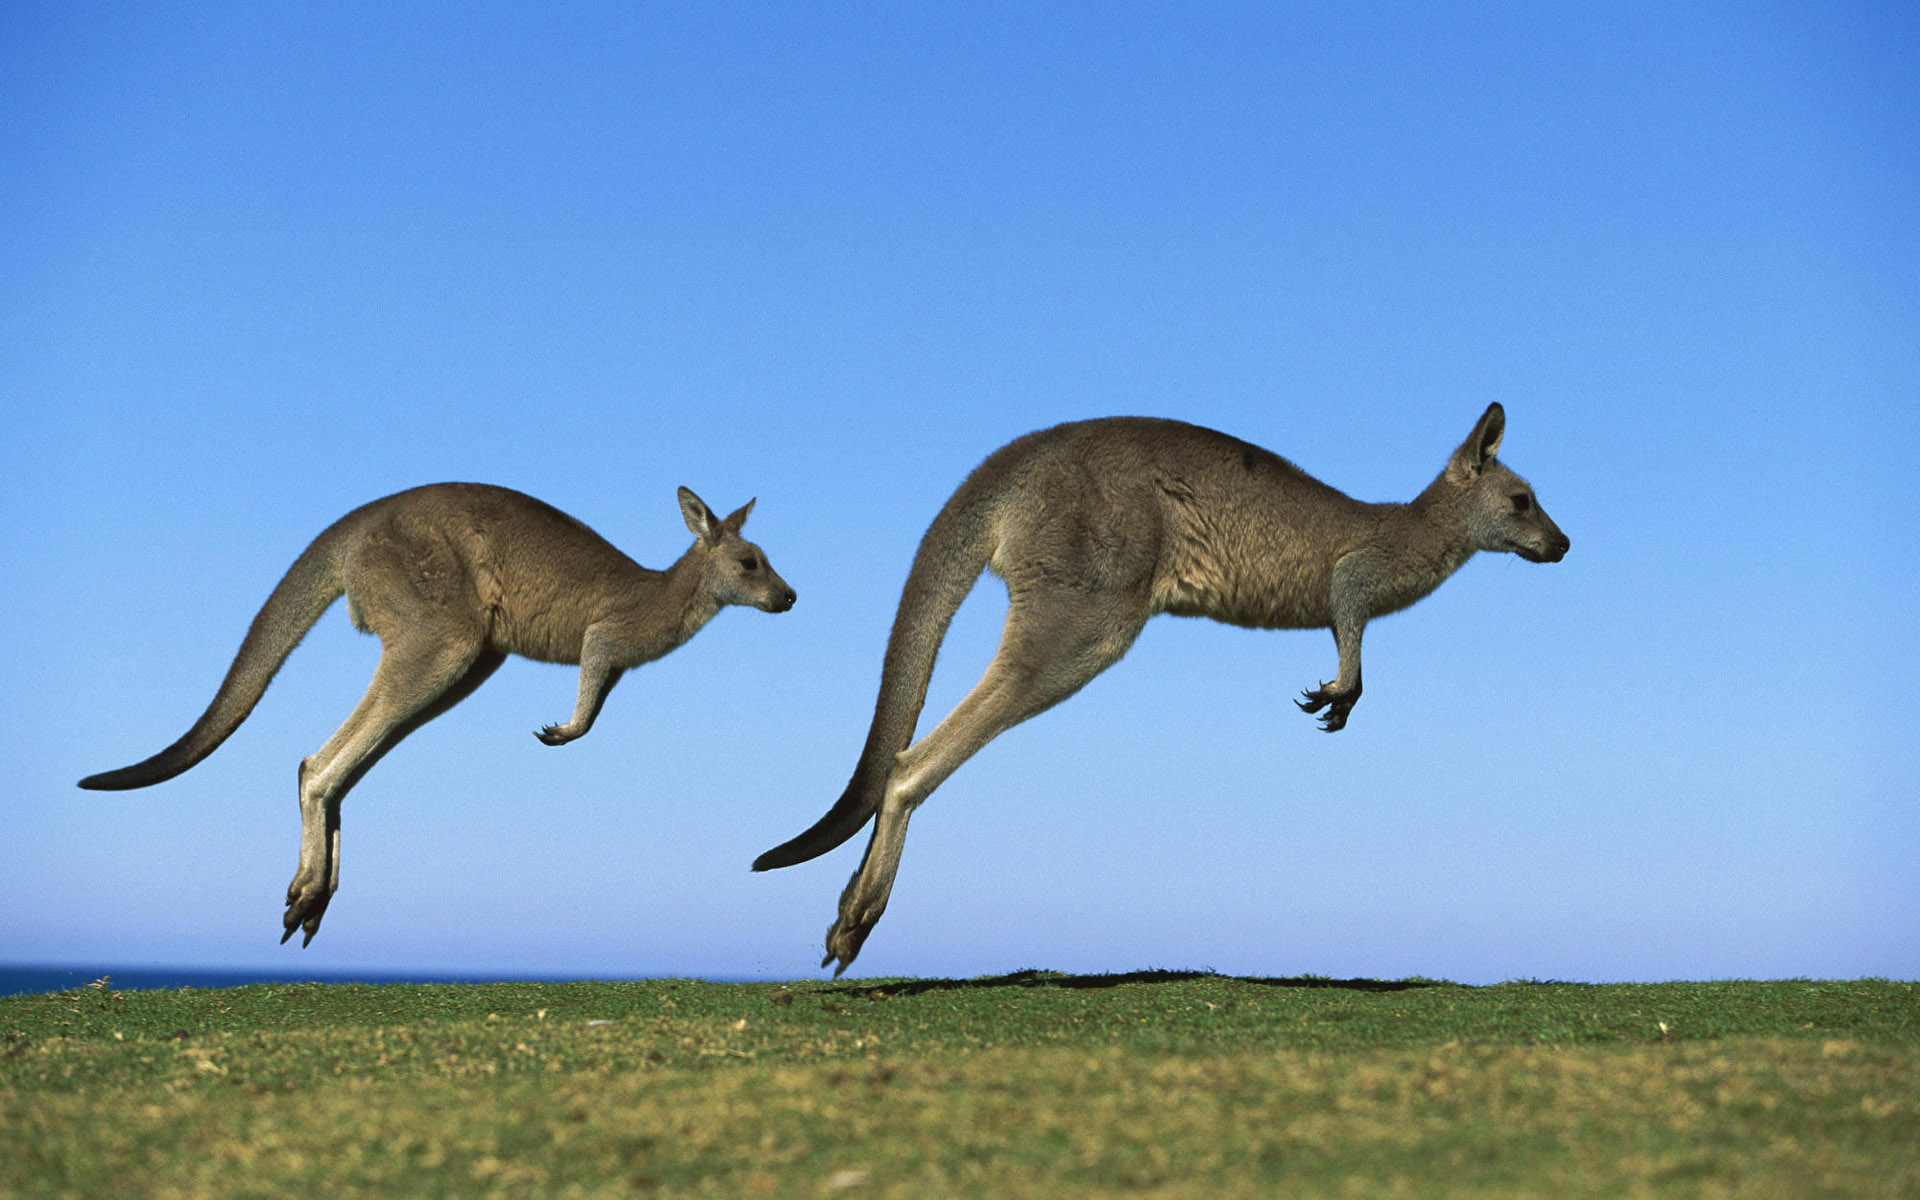 Animal Kangaroo HD Wallpaper | Background Image